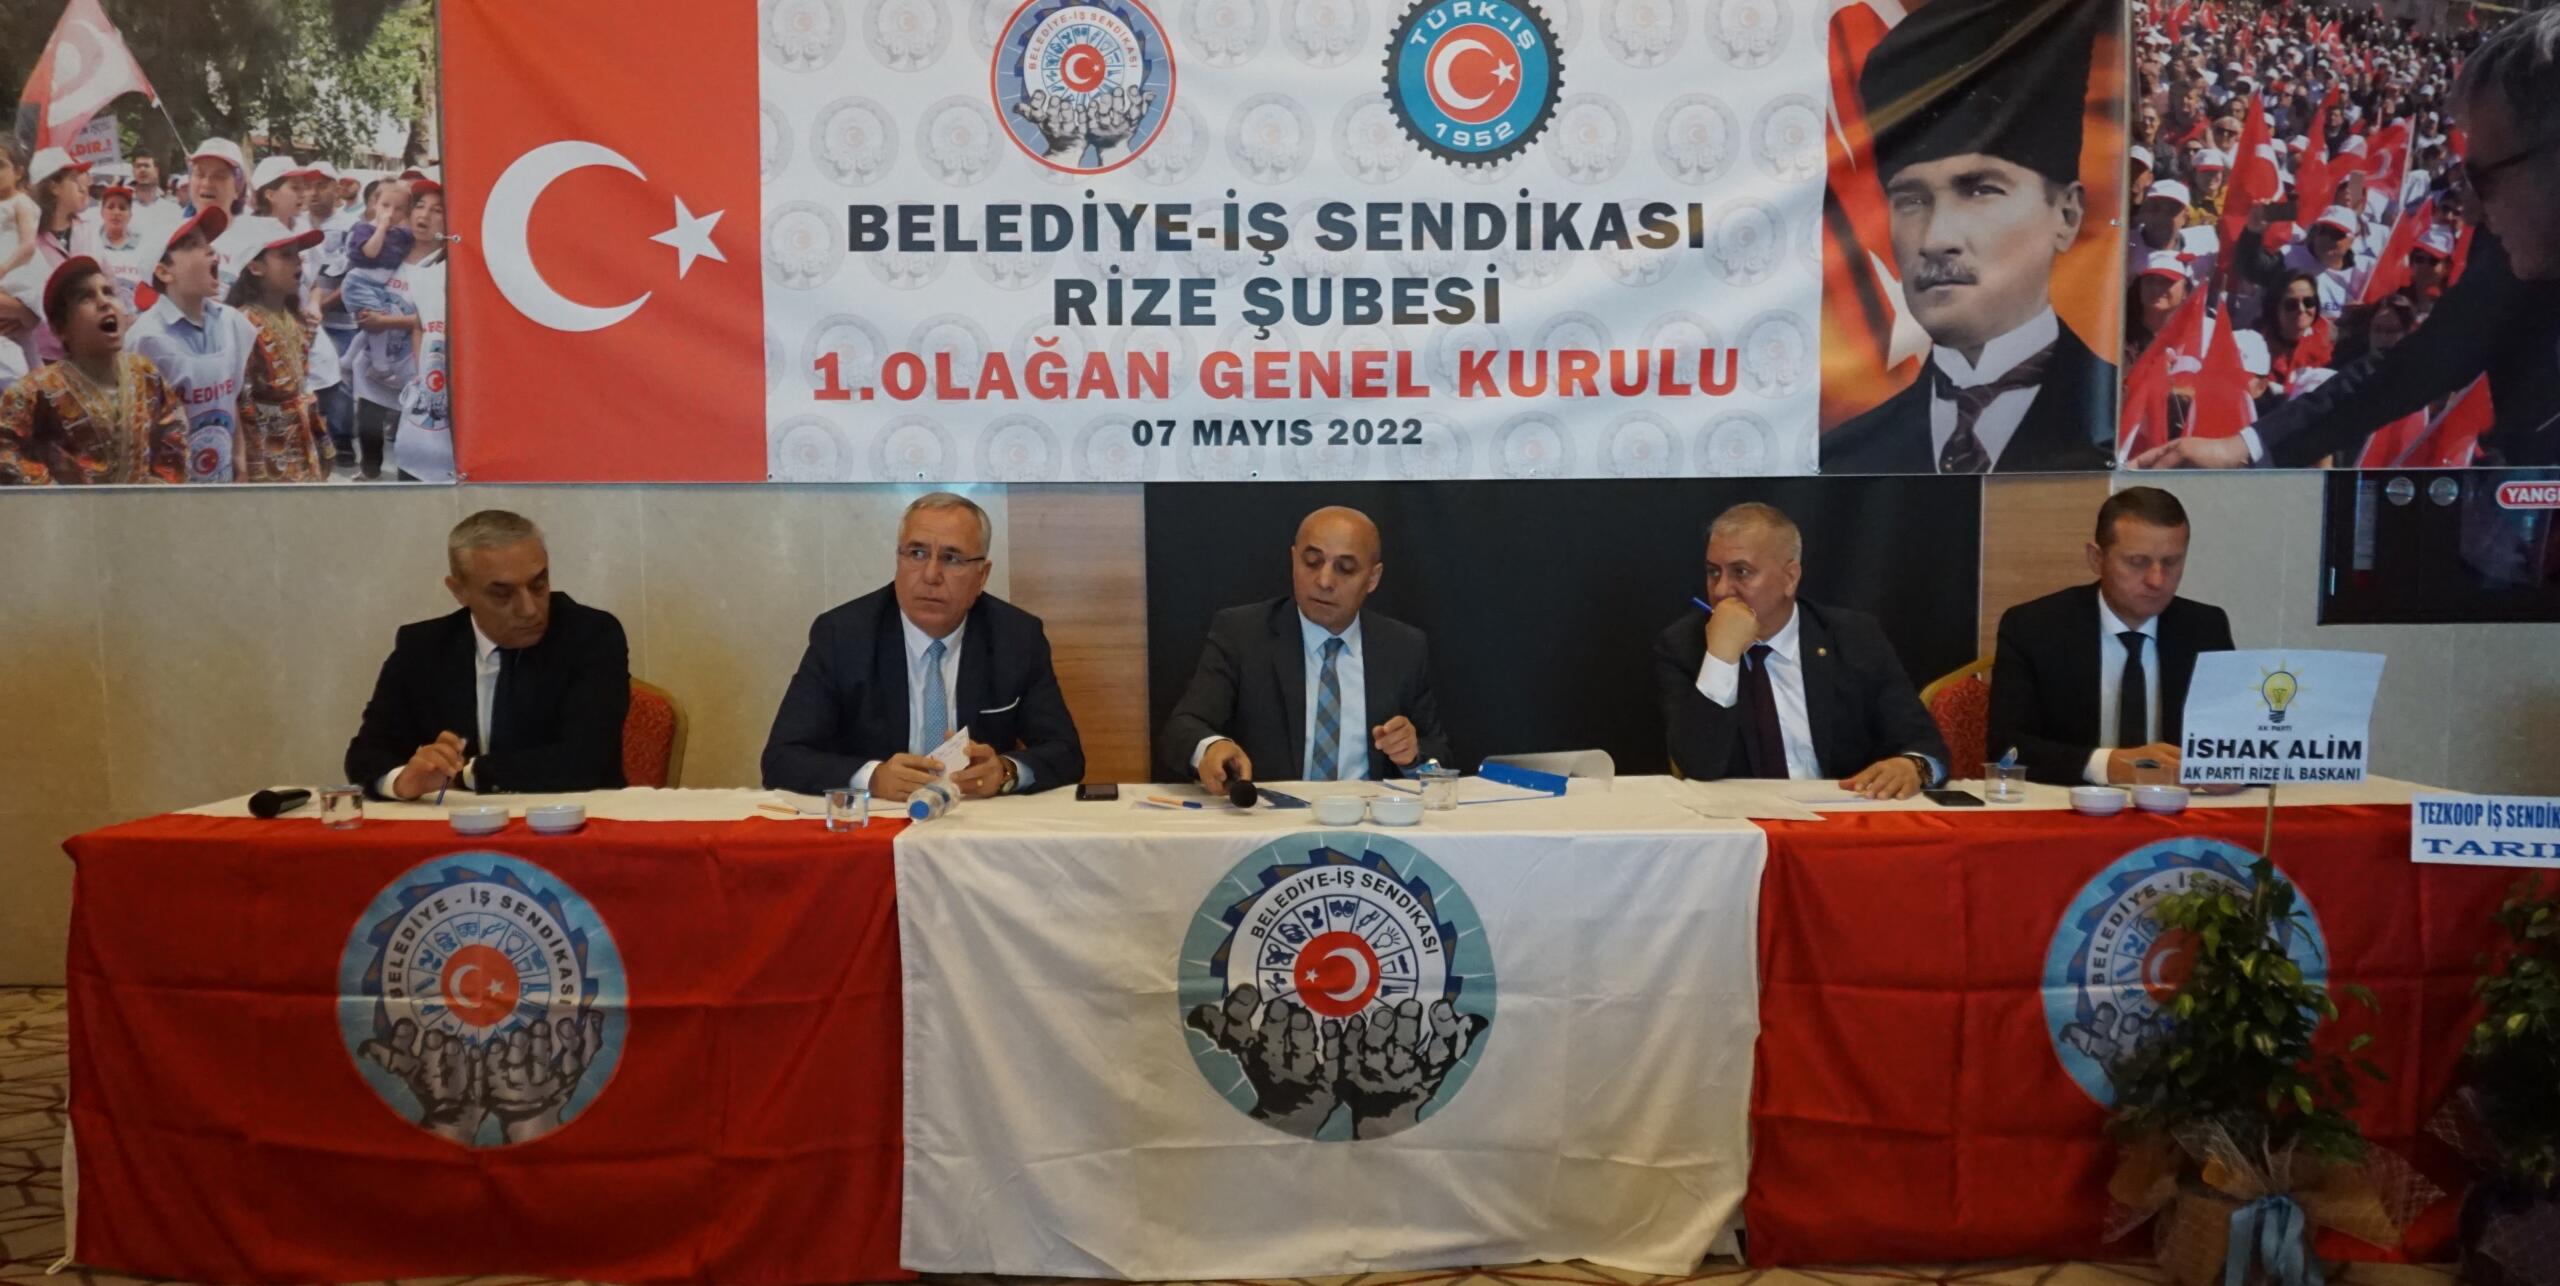 Yaşar Kaspar Belediye İş Sendikası Başkanlığına Seçildi